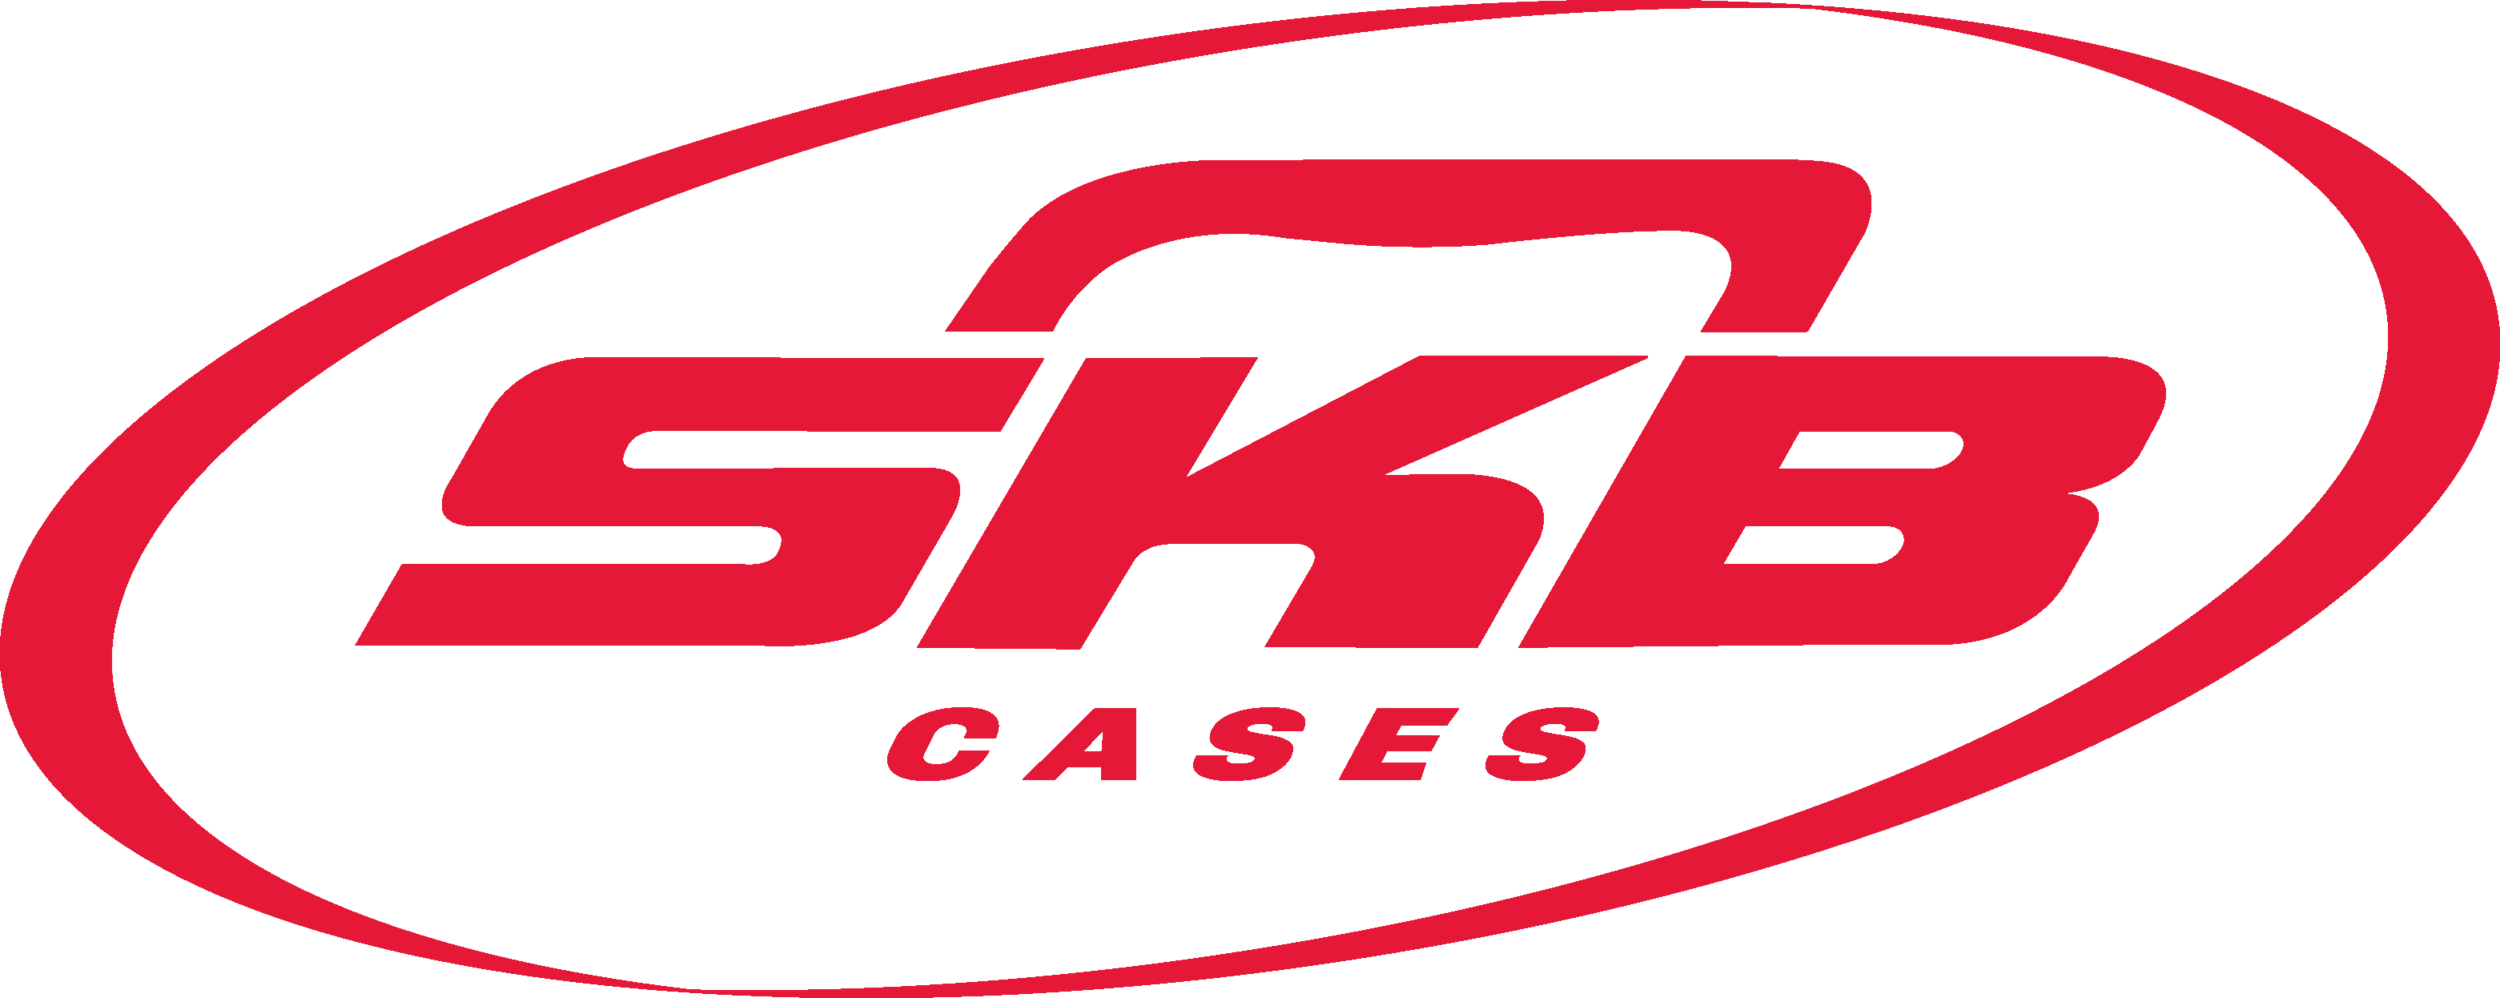 SKB Cases Logo.png